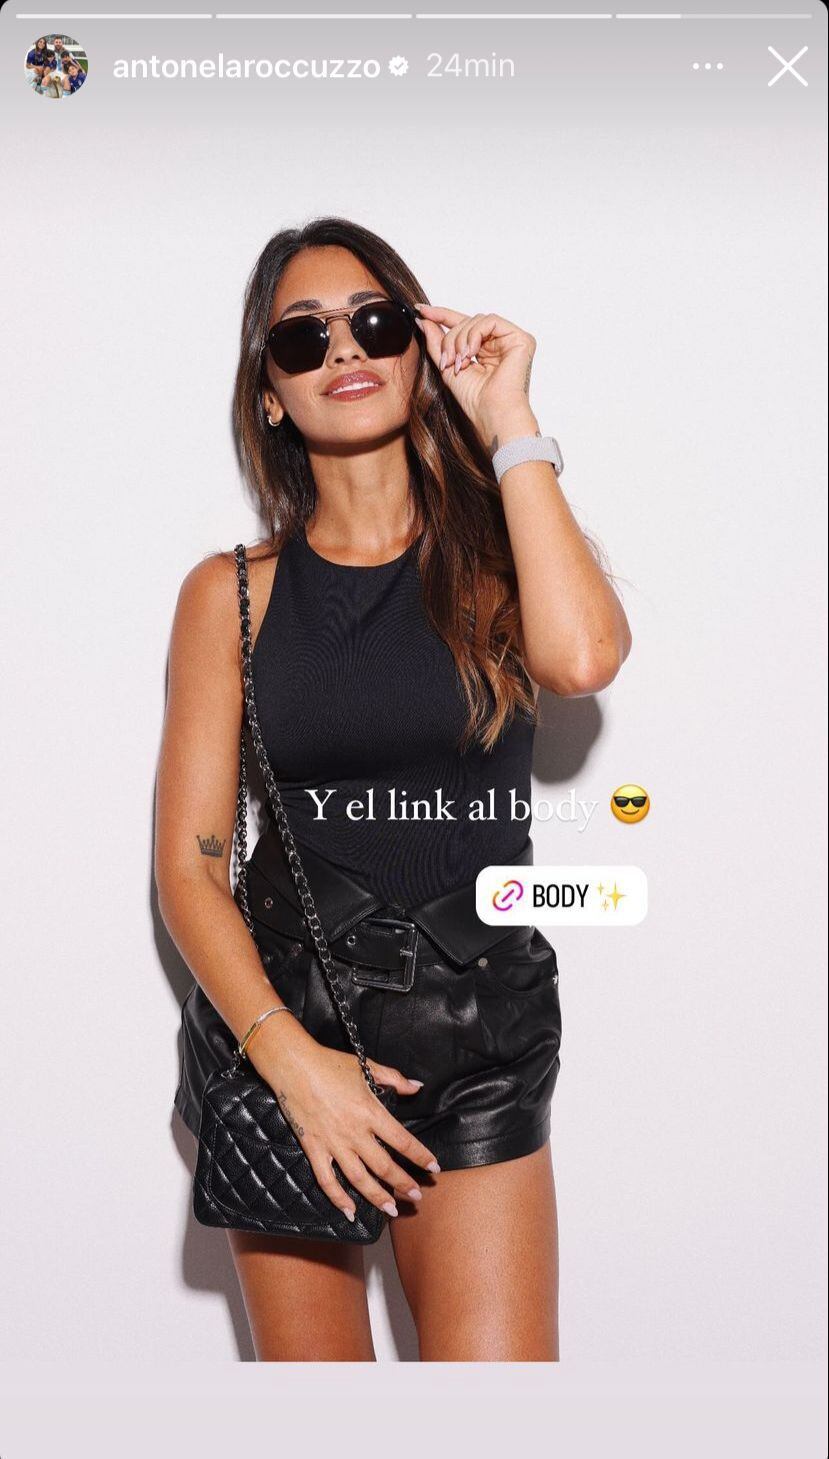 El look “total black” que Antonela Roccuzzo promociona en redes. Gentileza Instagram.